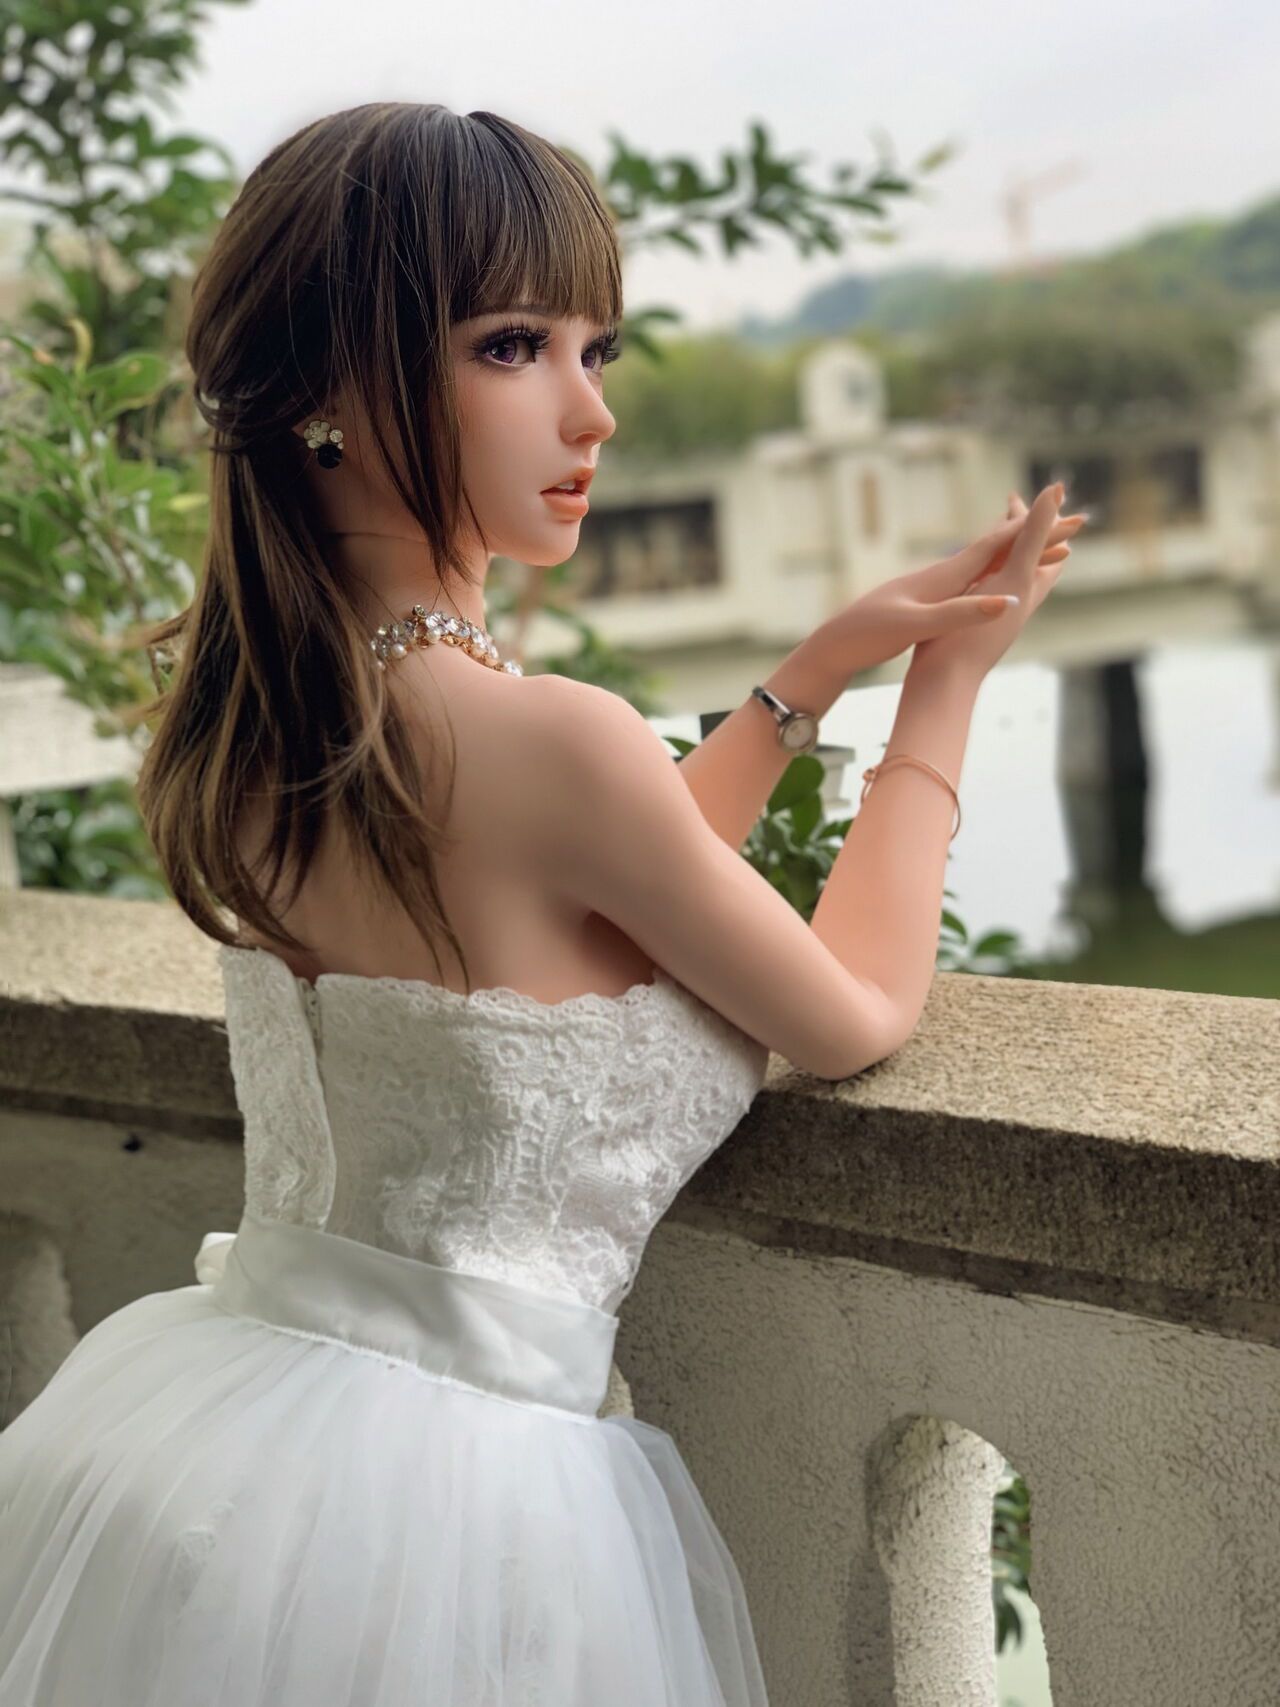 150CM HB031 Kurai Sakura-Bride in bud, to be married! by QIN 26